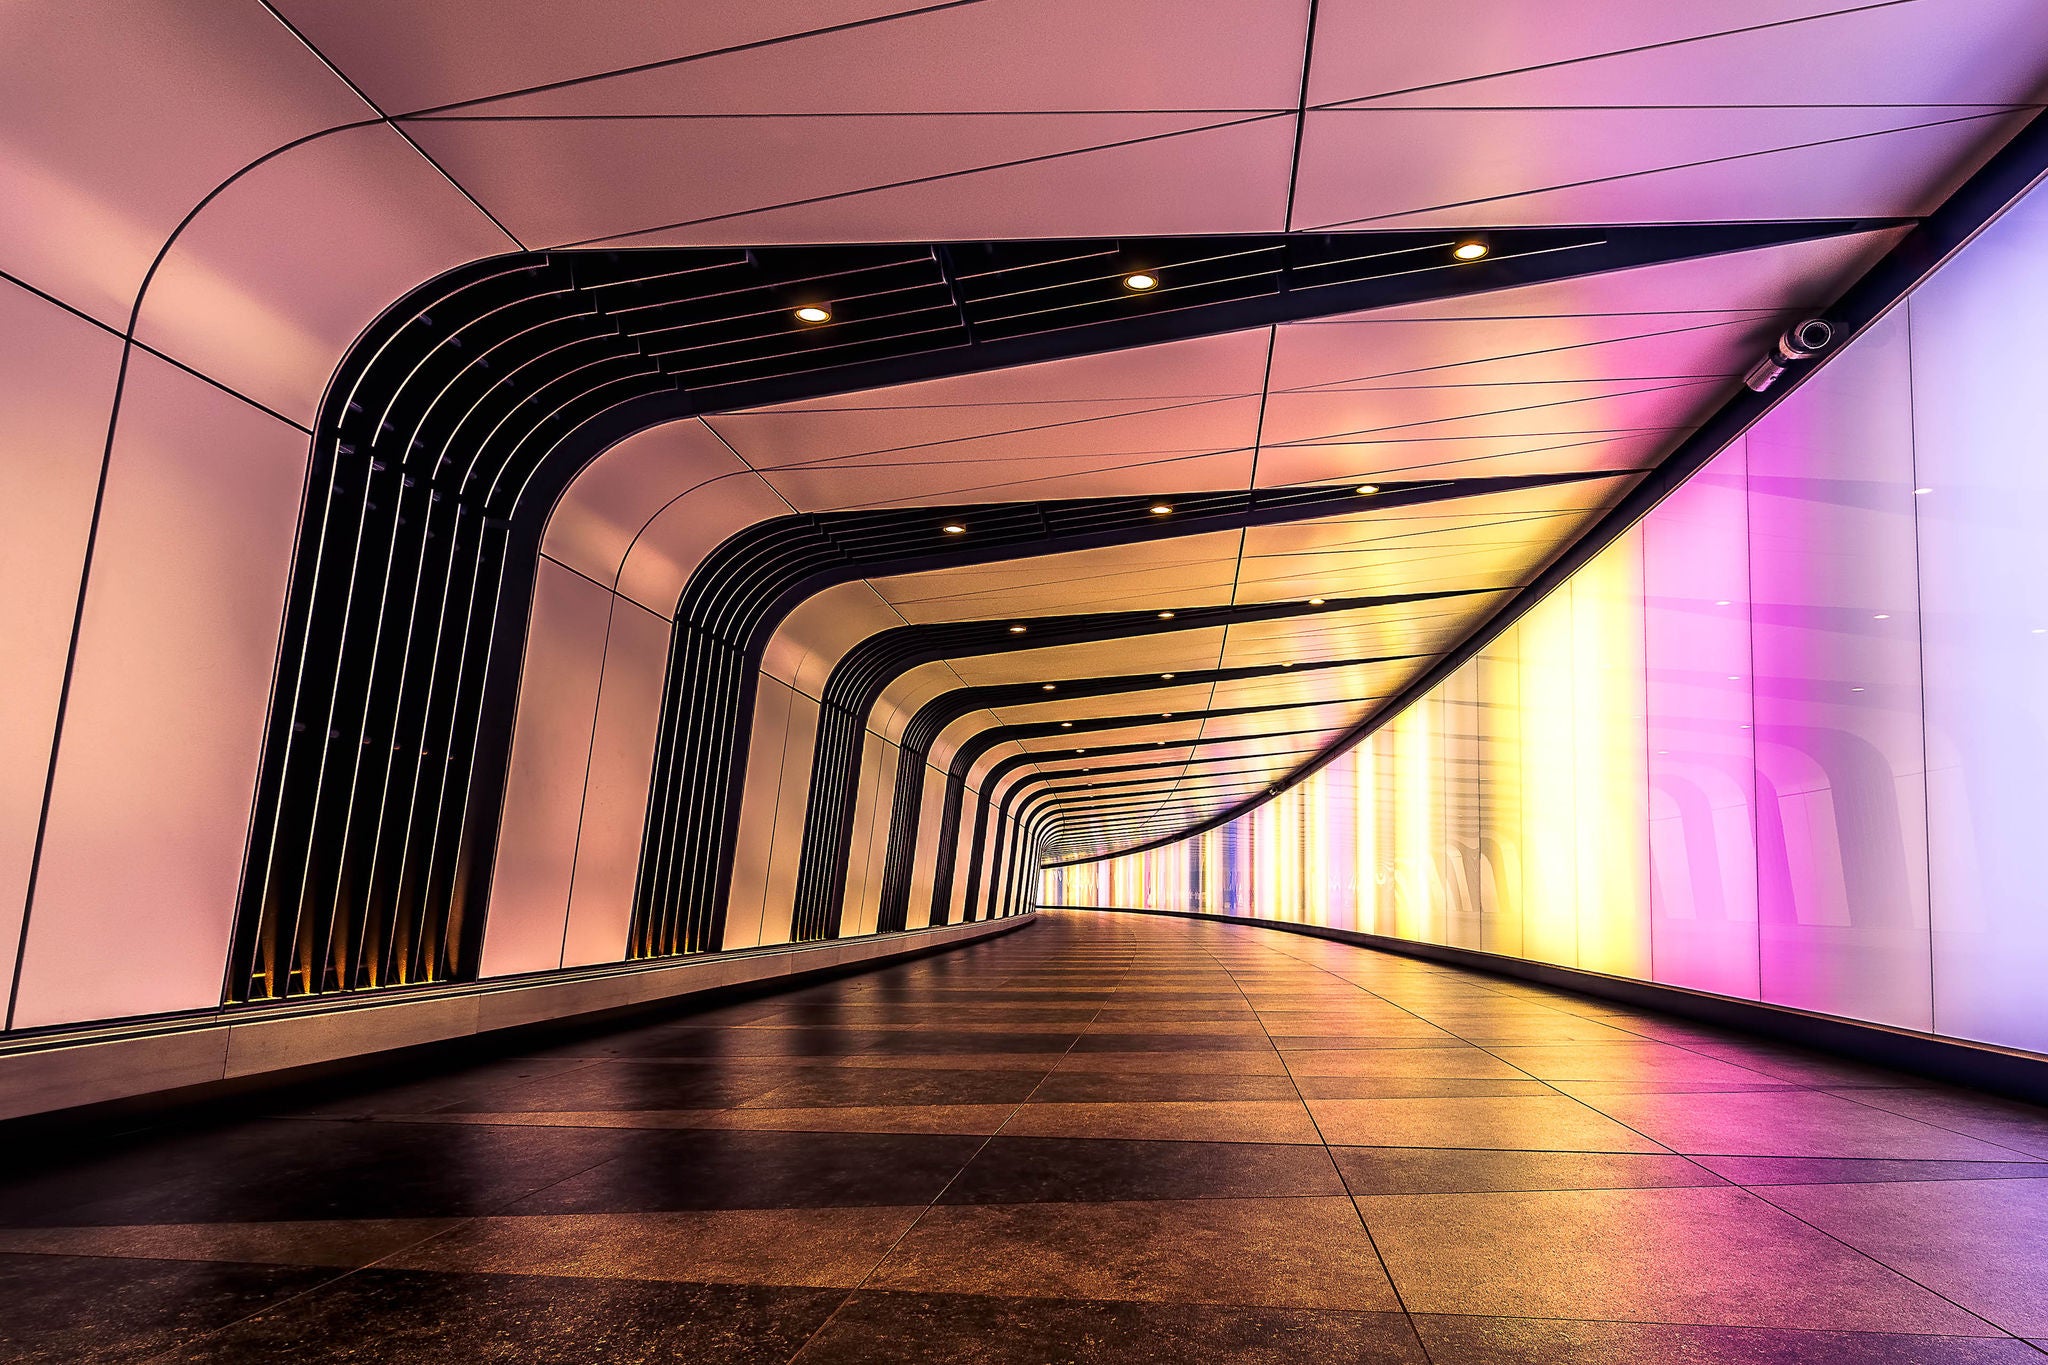 ey london underground walkway